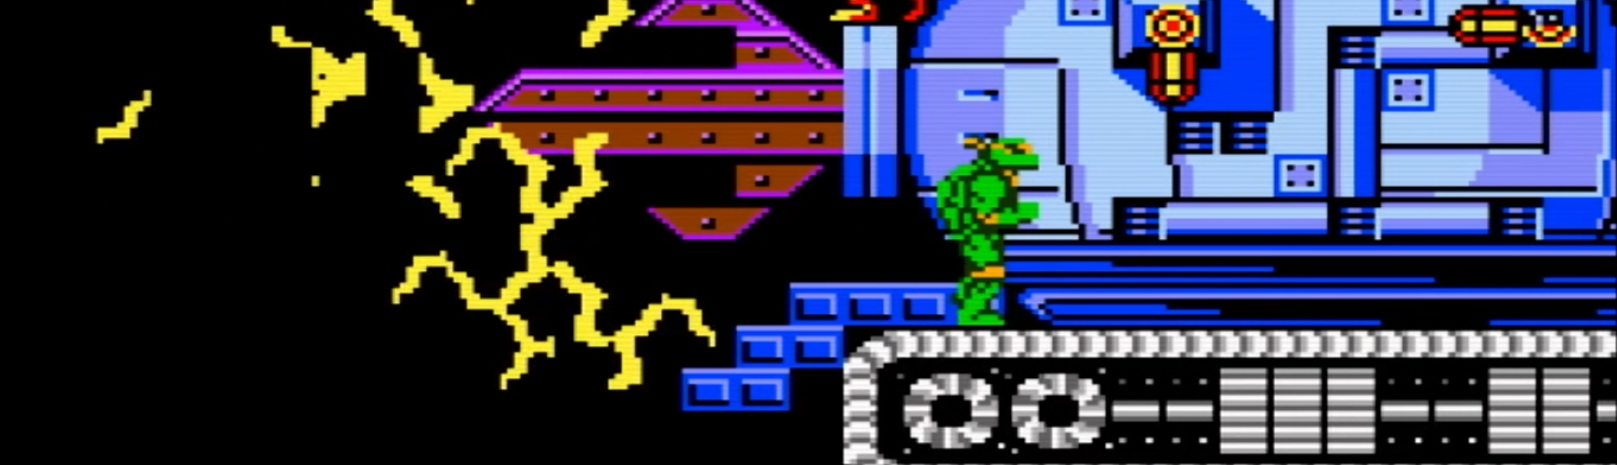 The Technodrome - Teenage Mutant Ninja Turtles NES